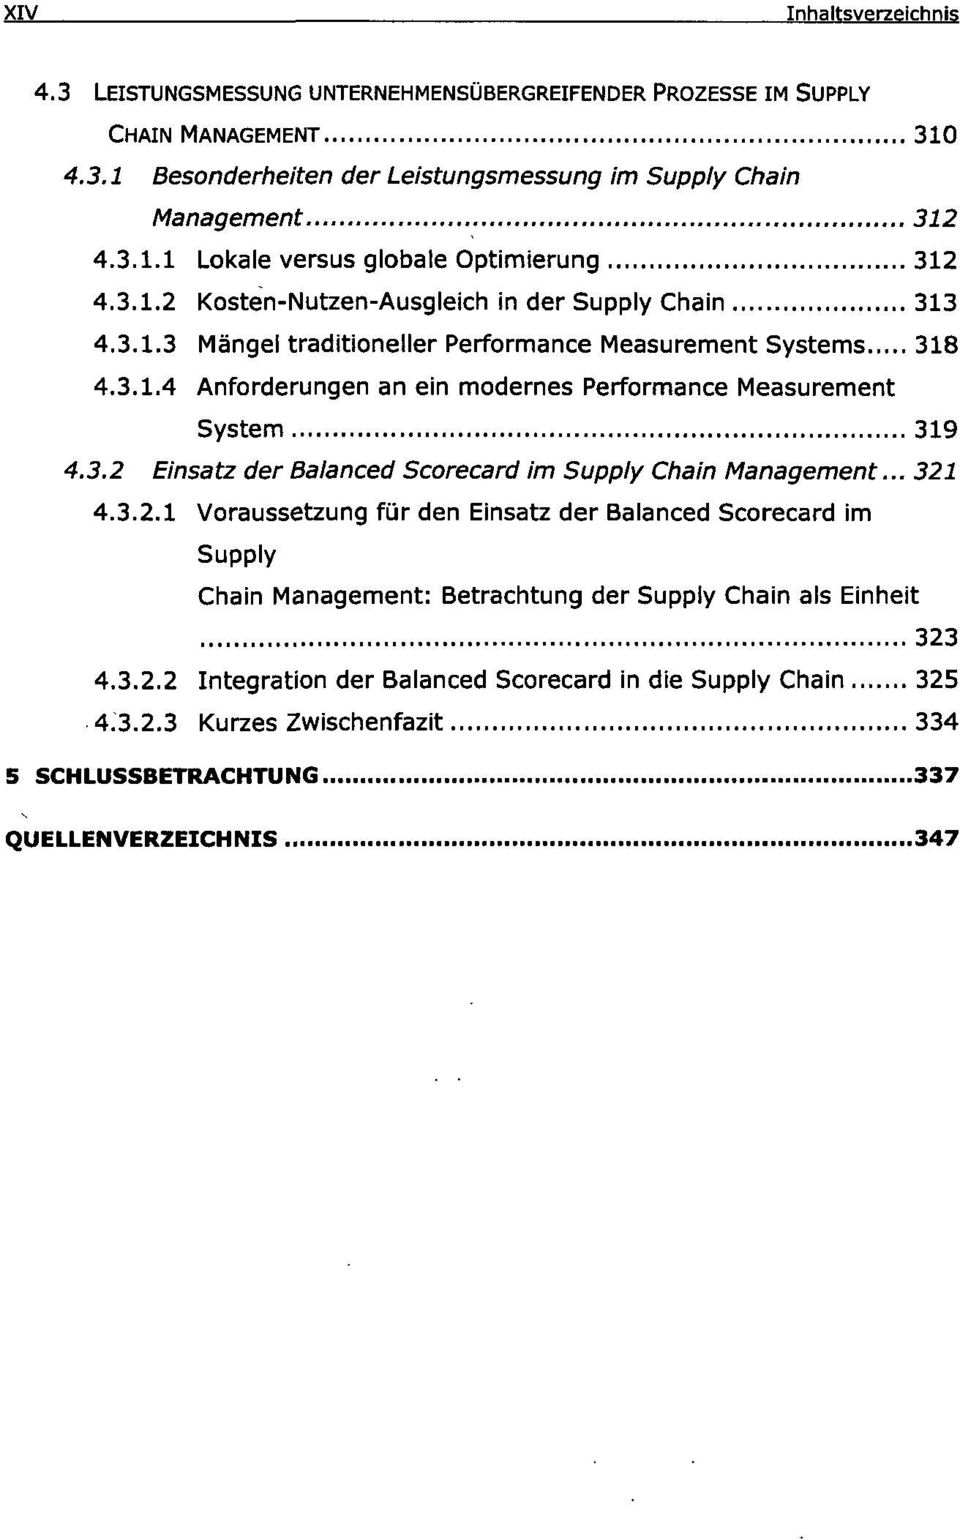 3.2 Einsatz der Balanced Scorecard im Supply Chain Management... 321 4.3.2.1 Voraussetzung für den Einsatz der Balanced Scorecard im Supply Chain Management: Betrachtung der Supply Chain als Einheit 323 4.